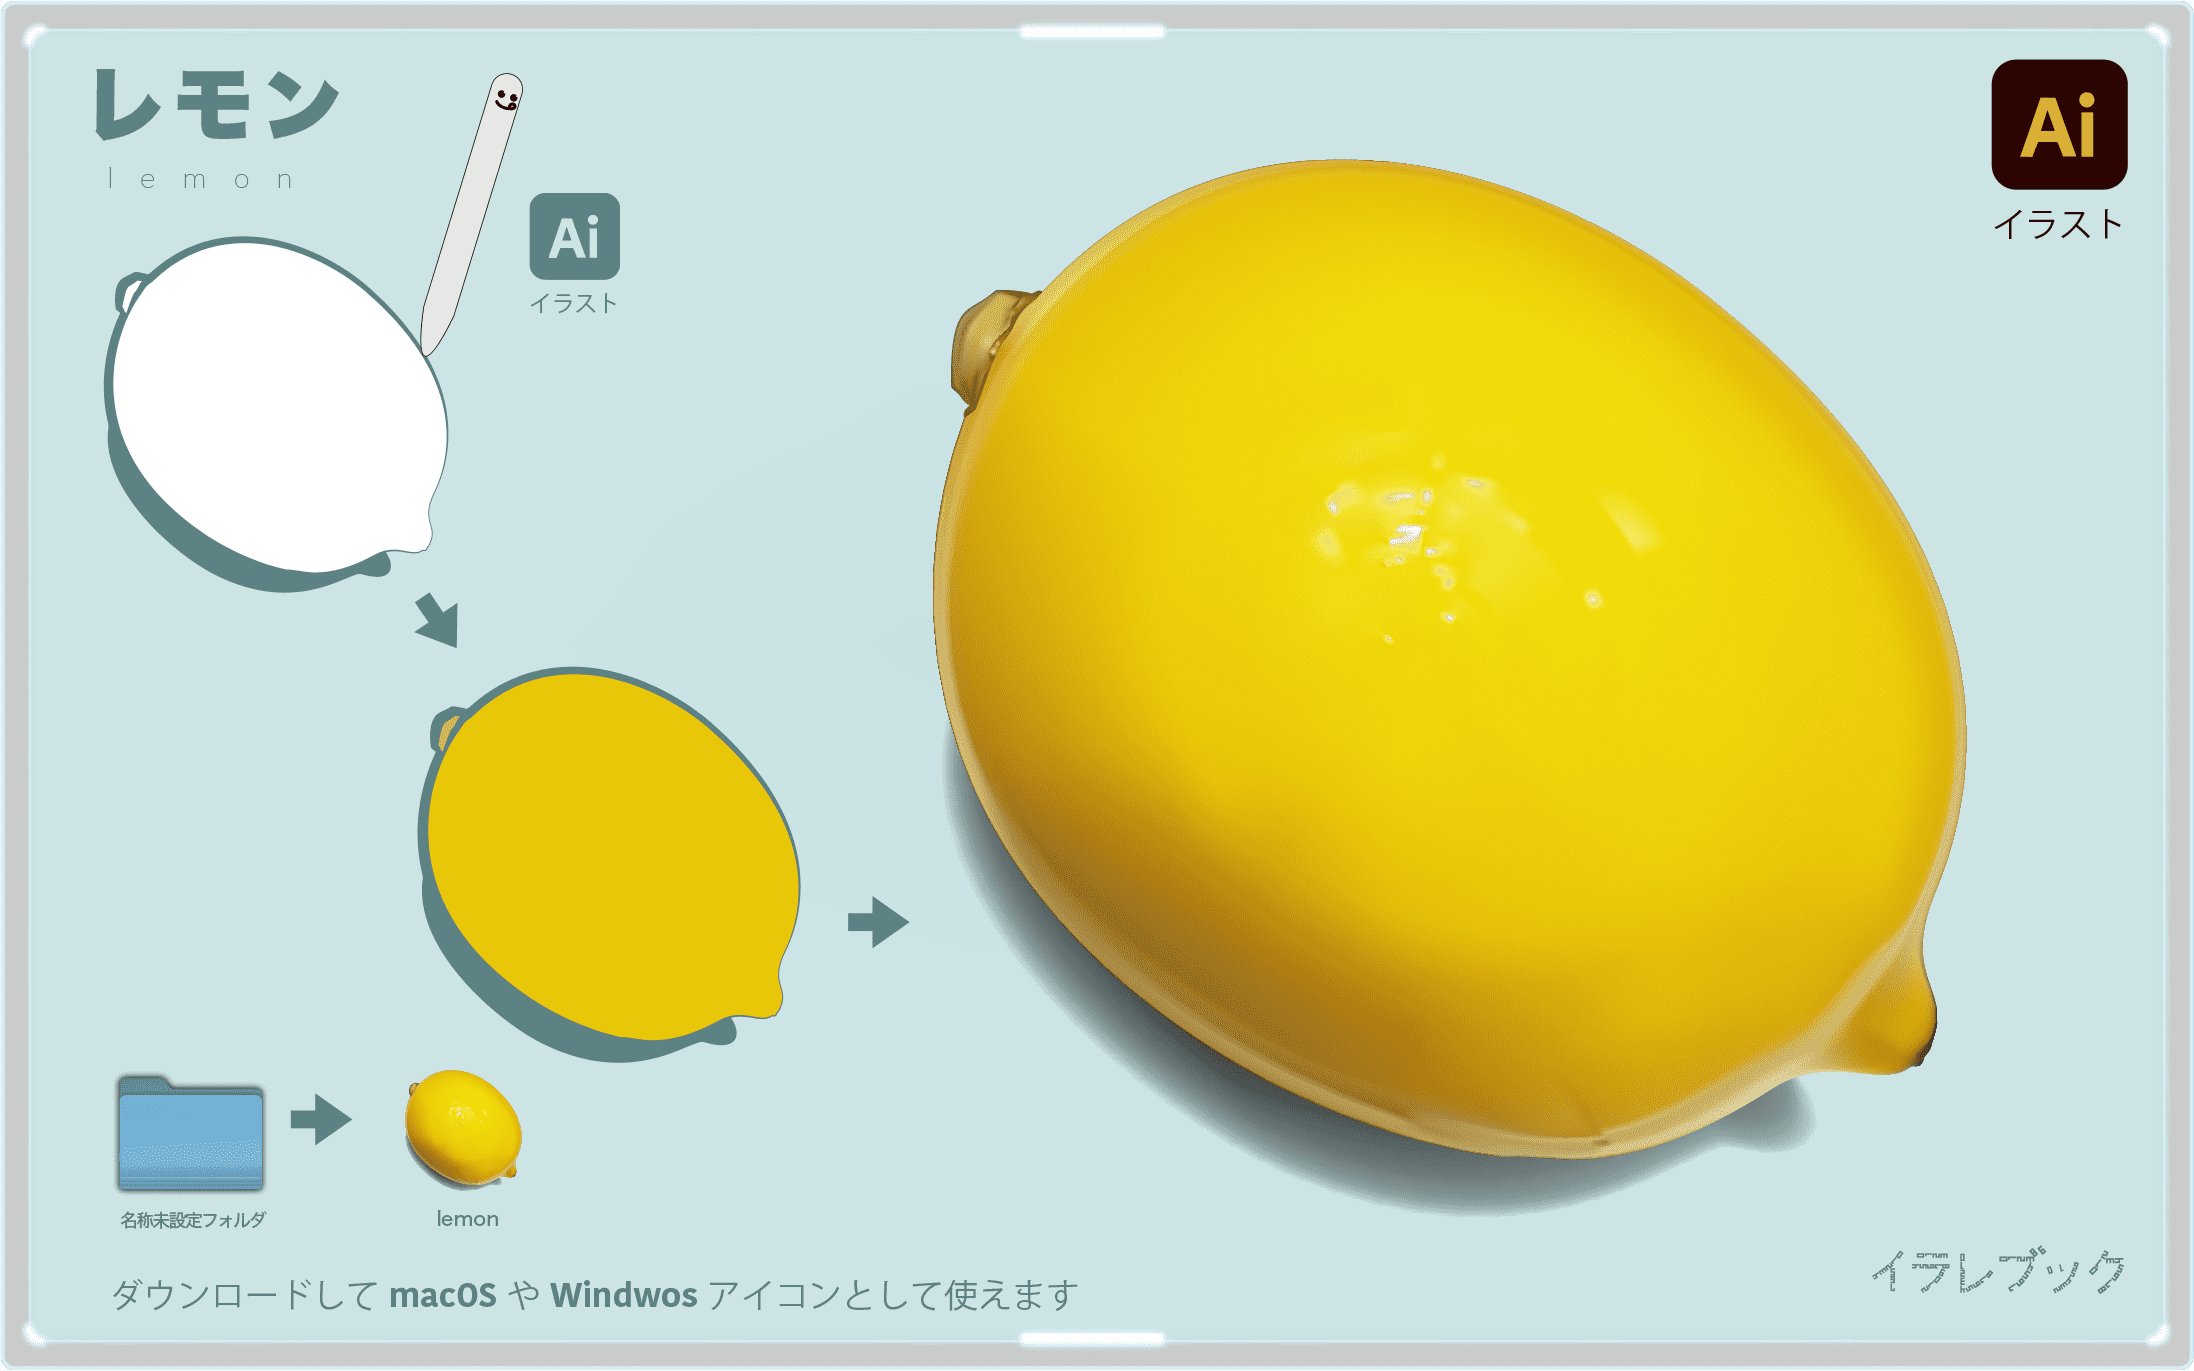 最も選択された Lemon イラスト イラスト画像検索エンジン